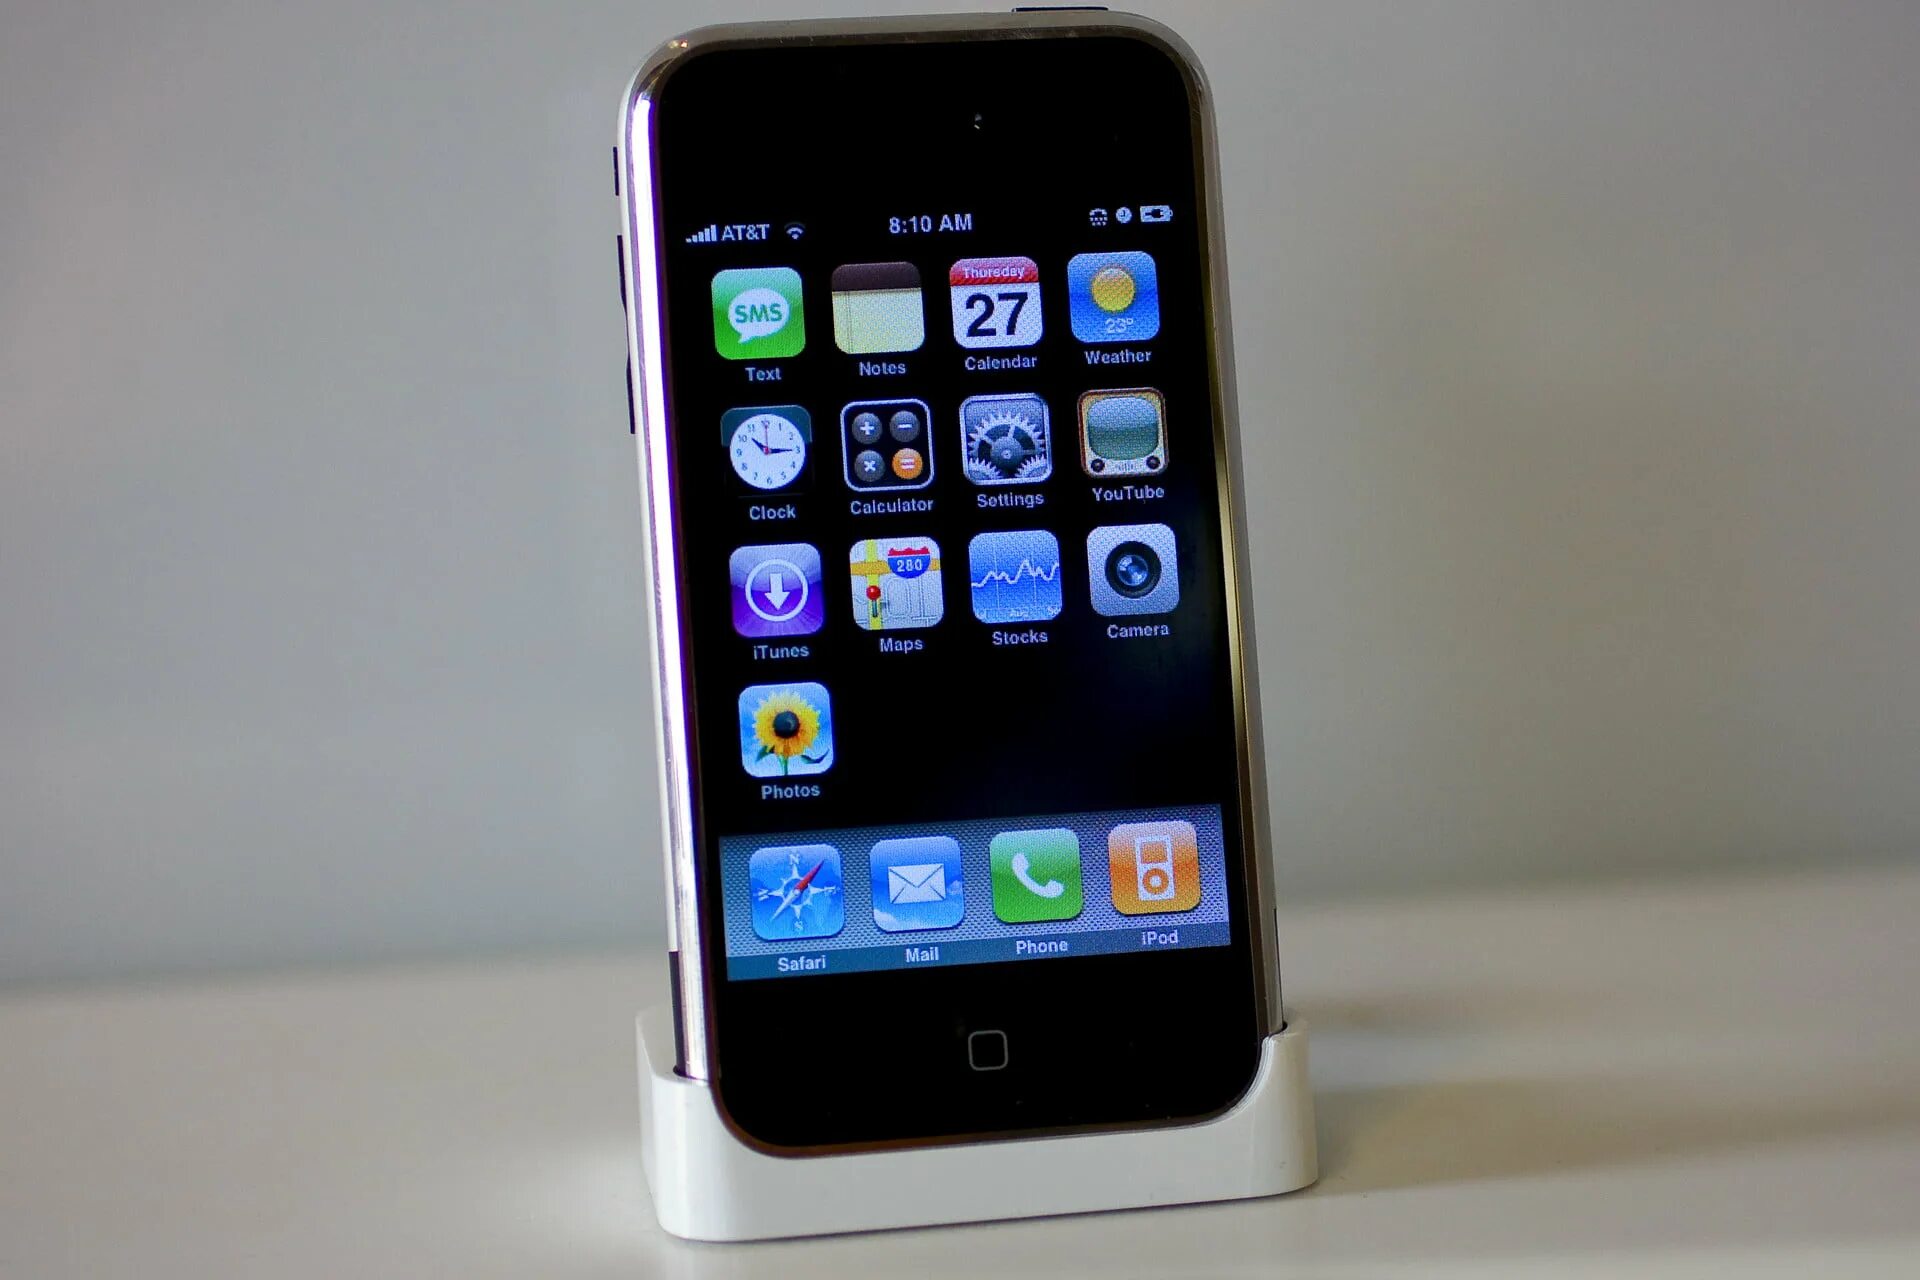 Apple iphone 1. Apple iphone 2007. Айфон 1g. Айфон первого поколения 2007.